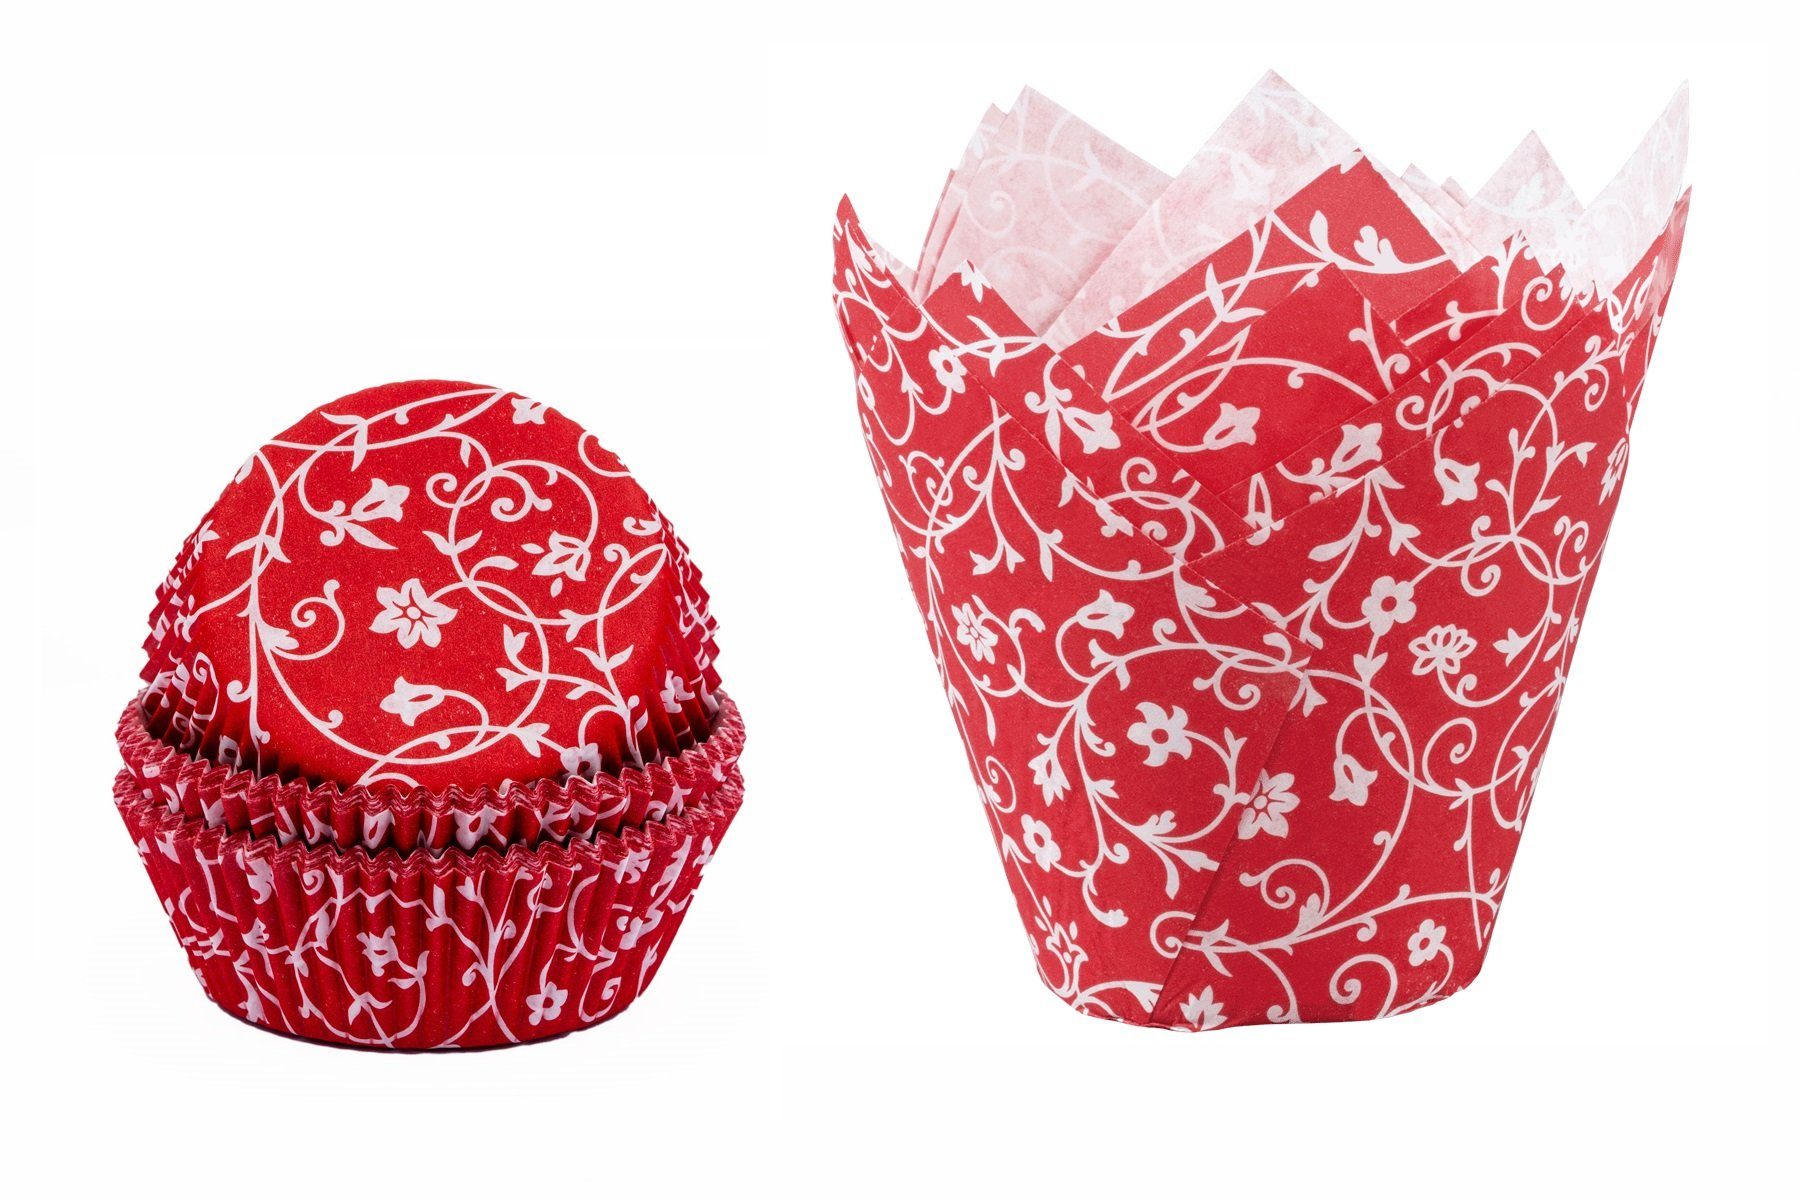 Demmler Muffinform Rot mit weißem Muster, Papier Backform Set mit Muffinförmchen & Tulip-Wraps - Made in Germany